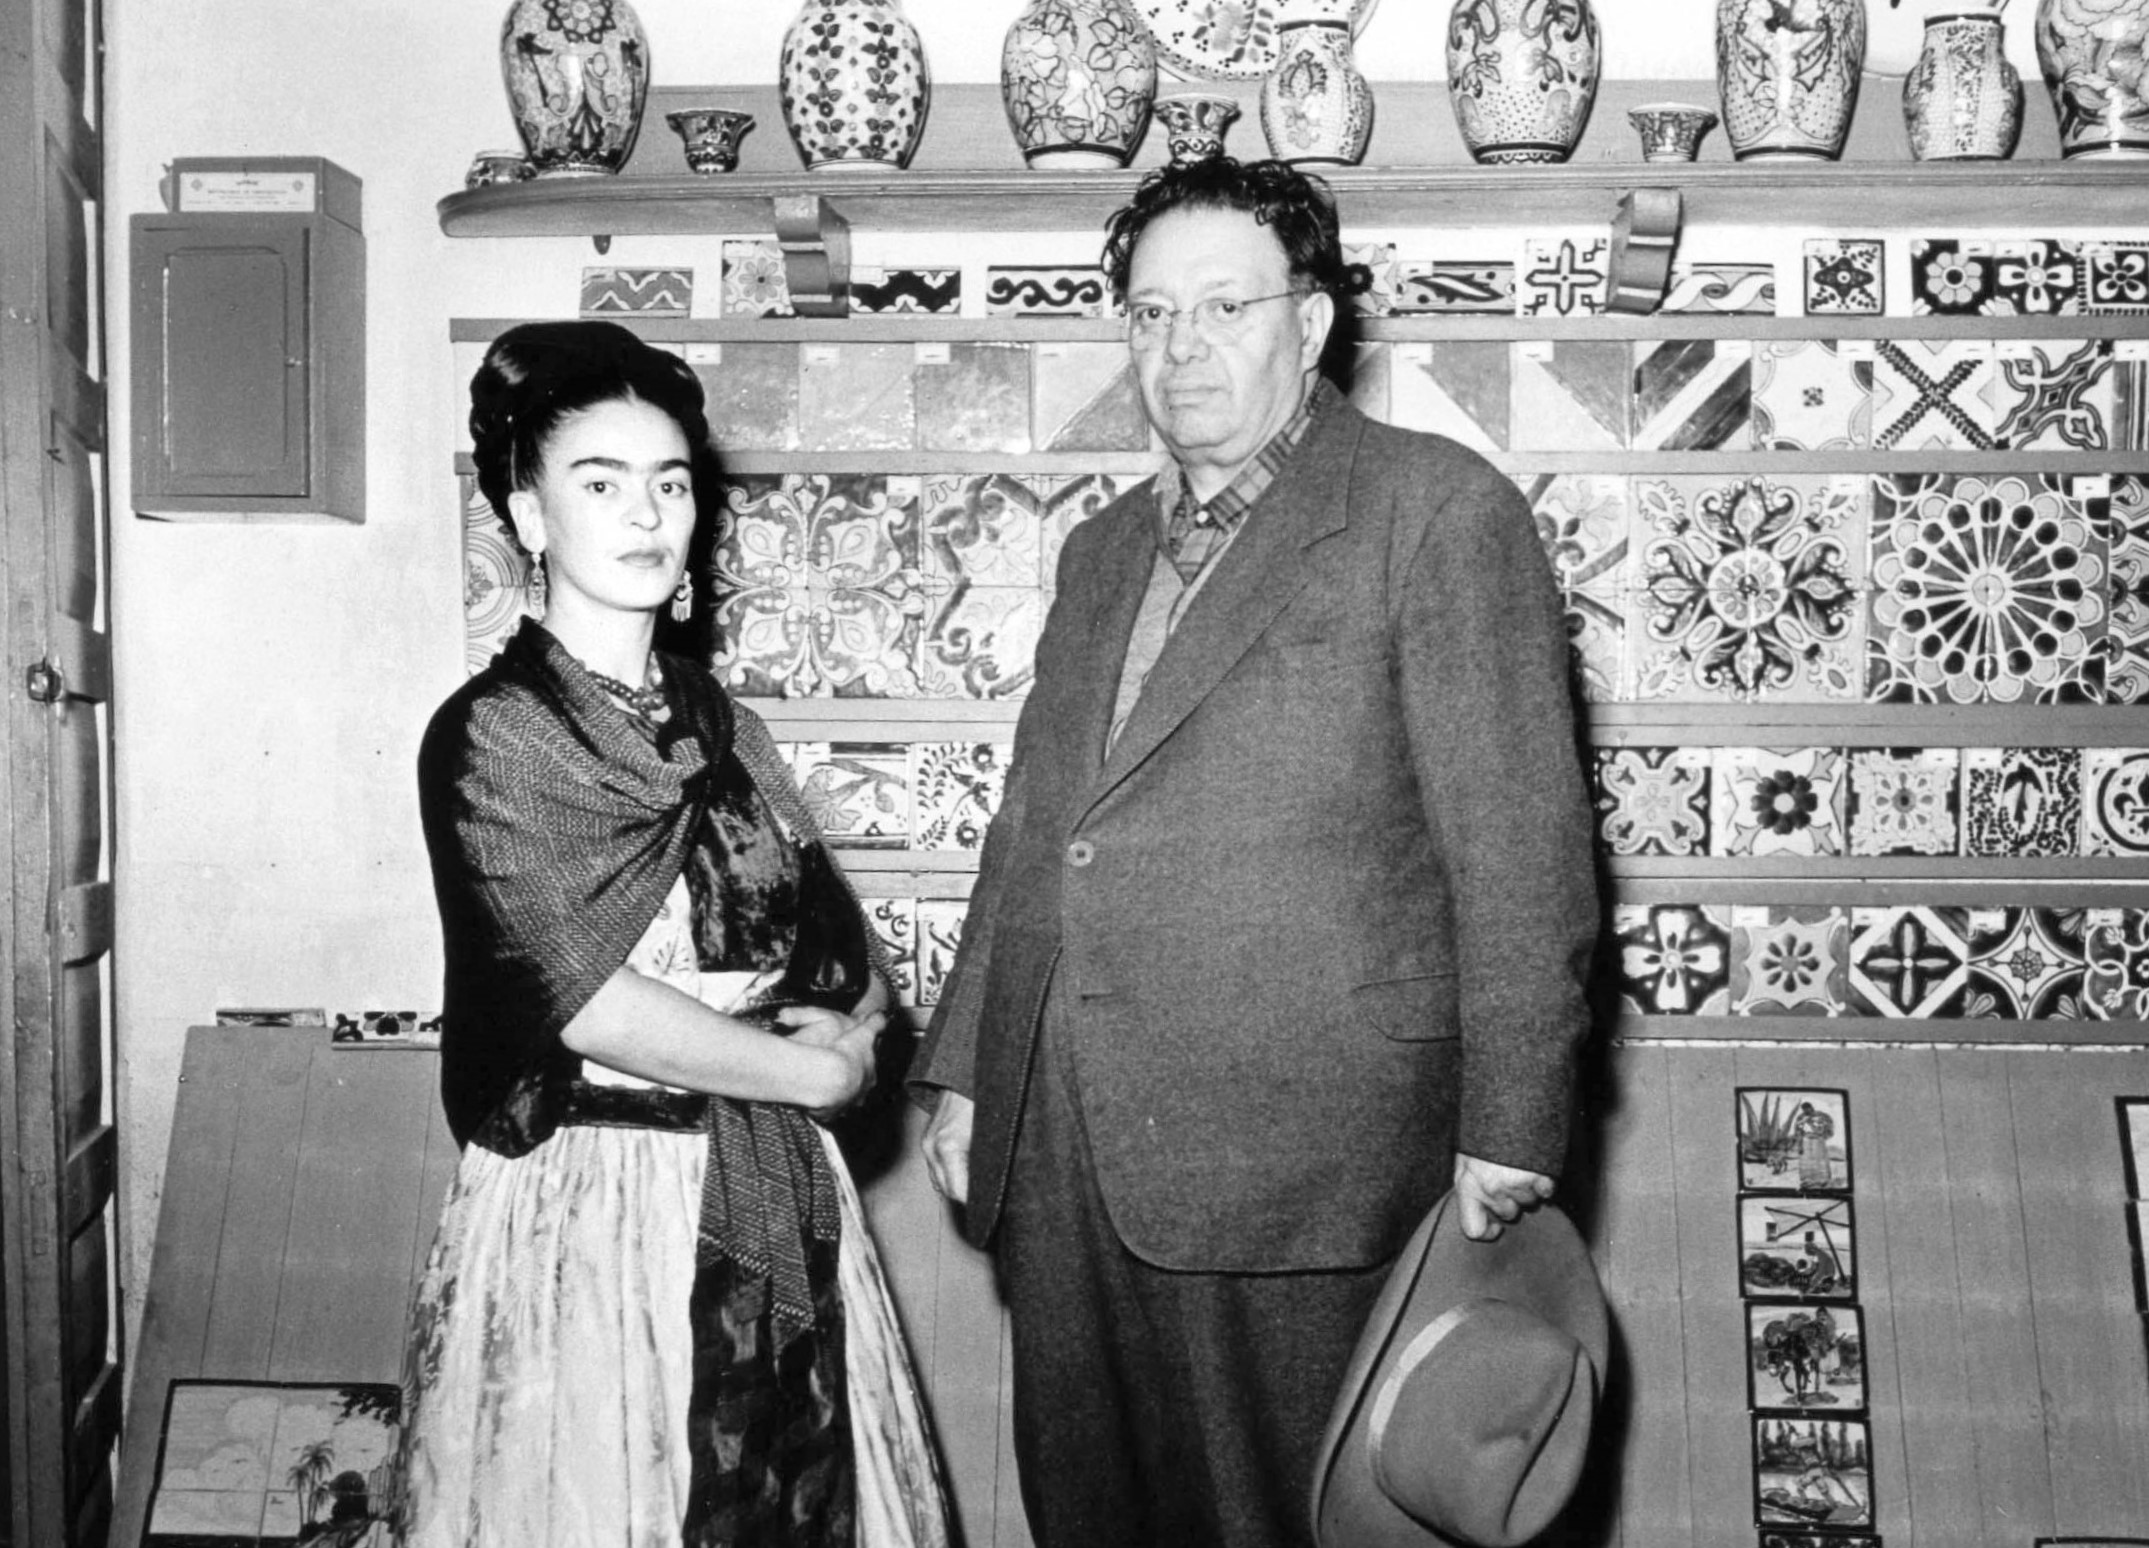 Frida y Diego: ¿Un amor sui generis o adelantado a su época?